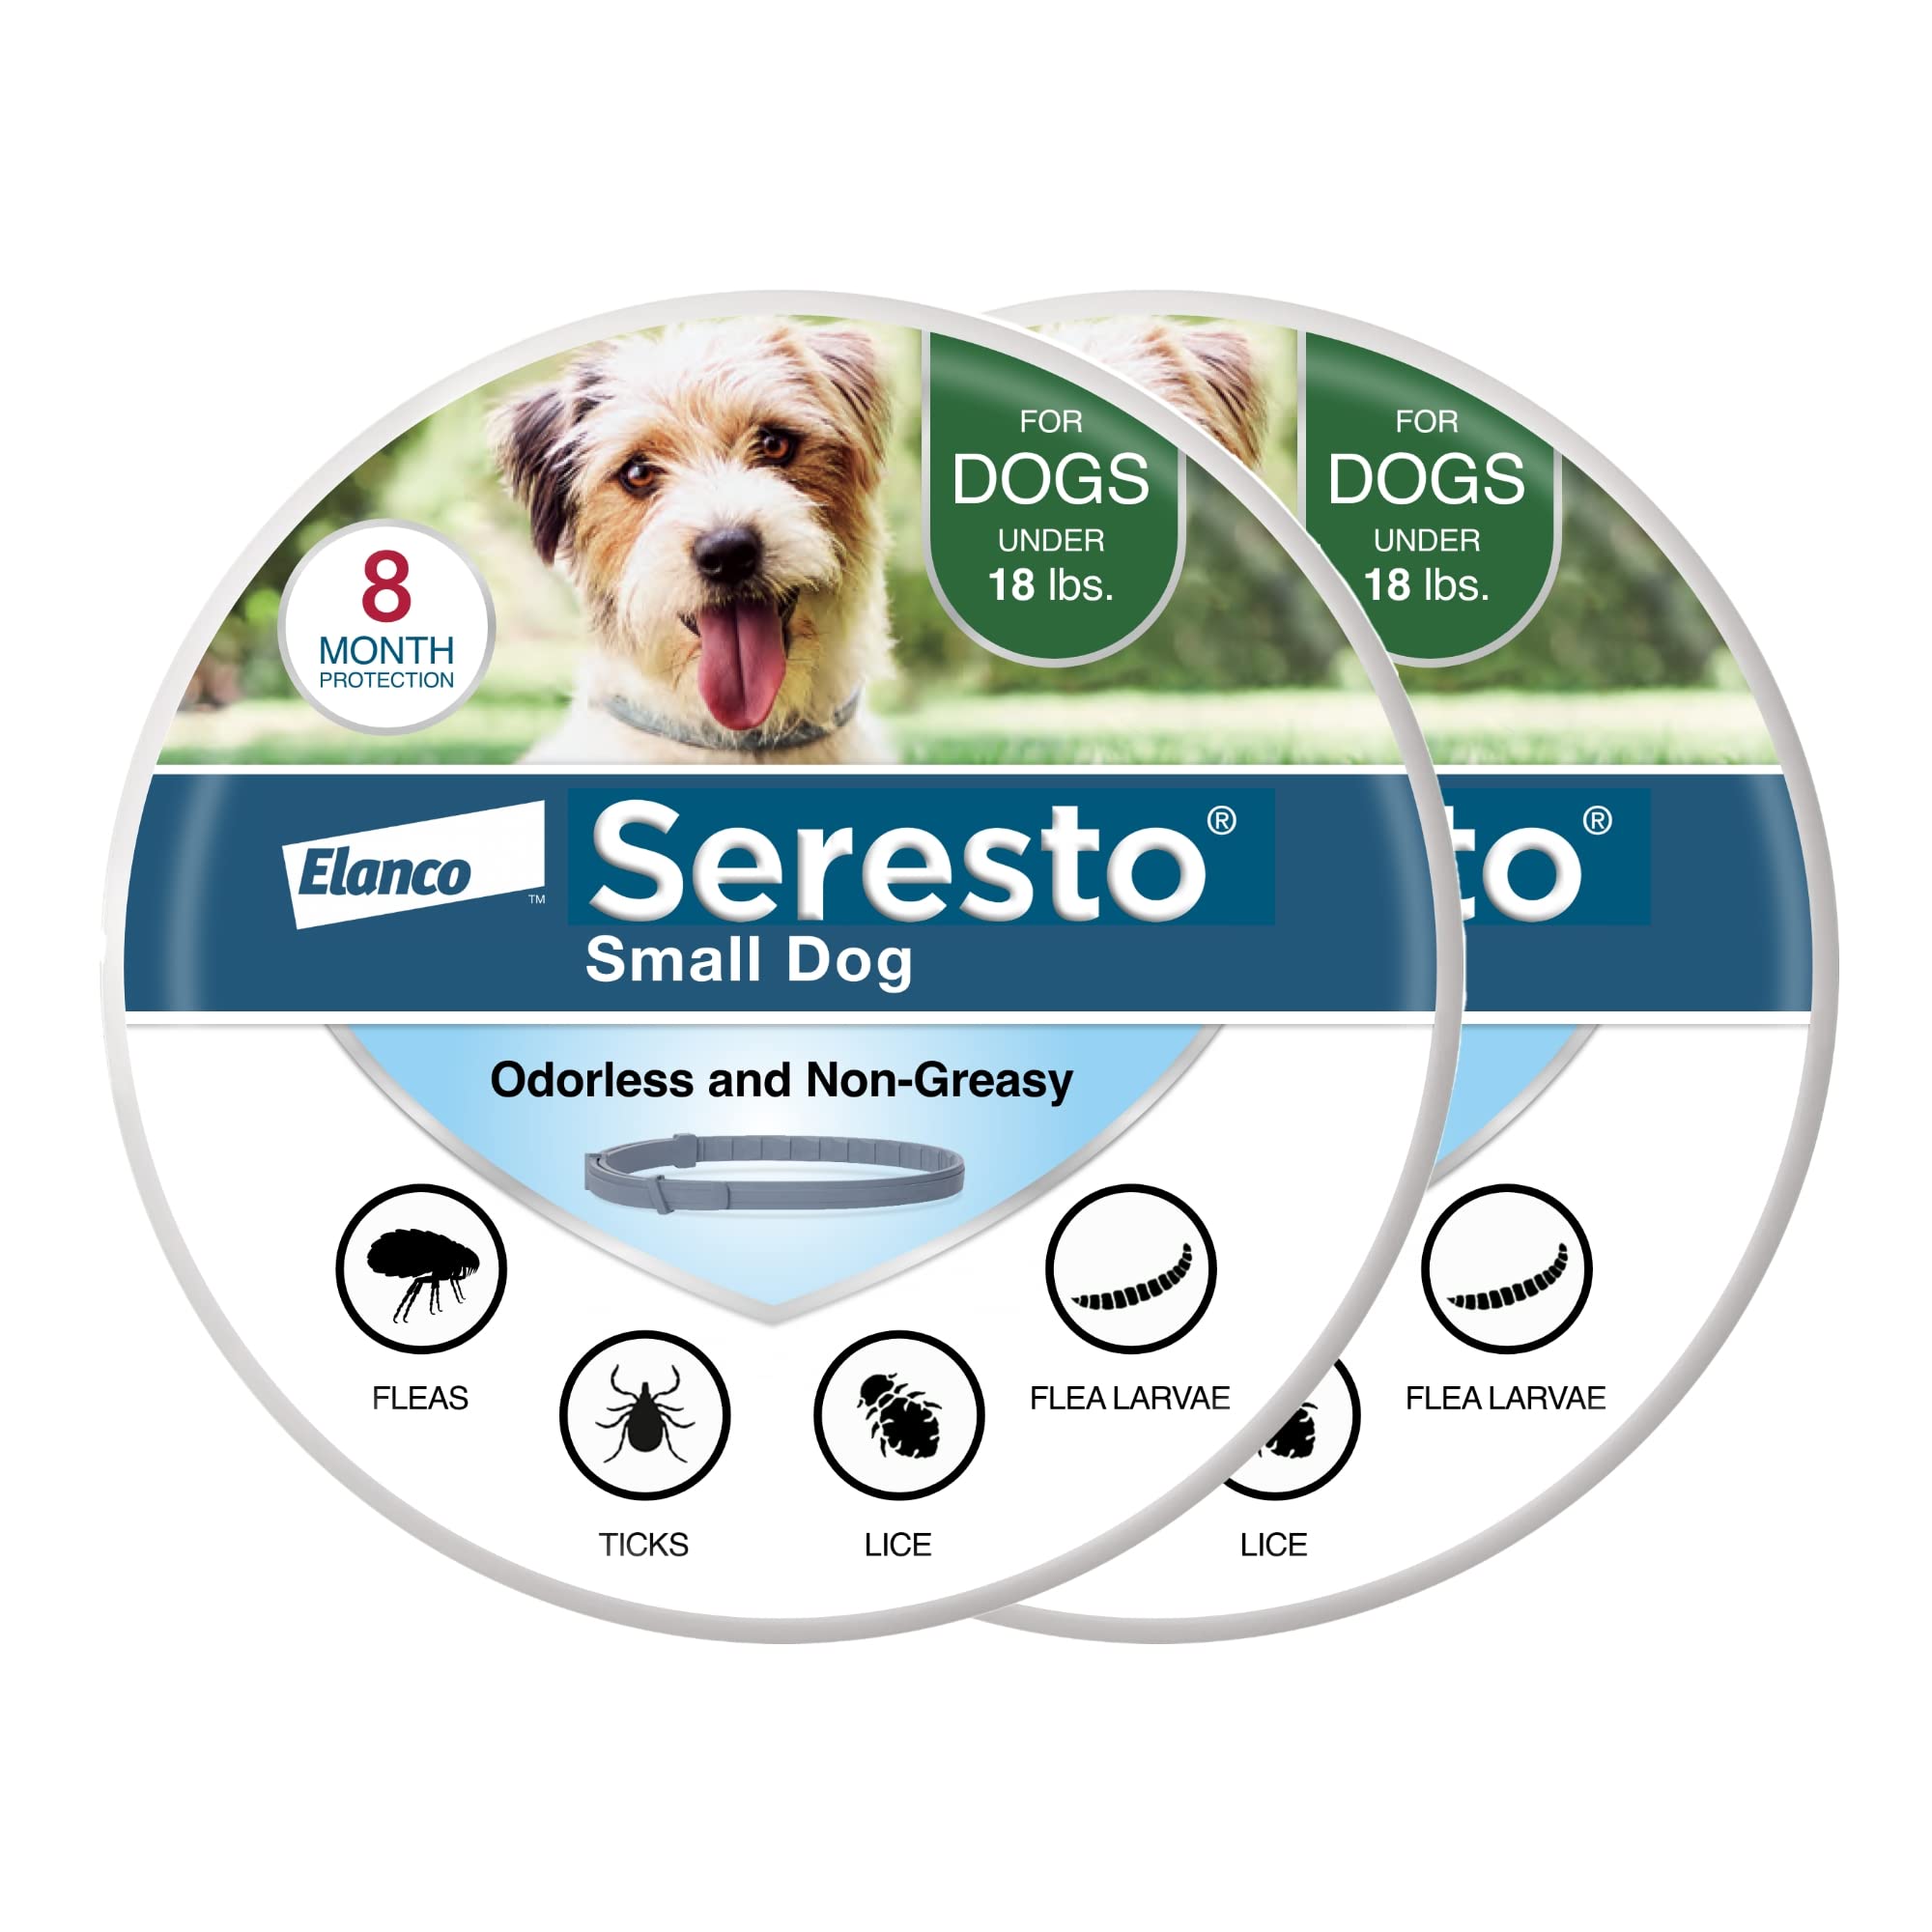 Seresto Collier de traitement et de prévention contre les puces et les tiques recommandé par les vétérinaires pour petits chiens de moins de 18 lb. | Paquet de 2